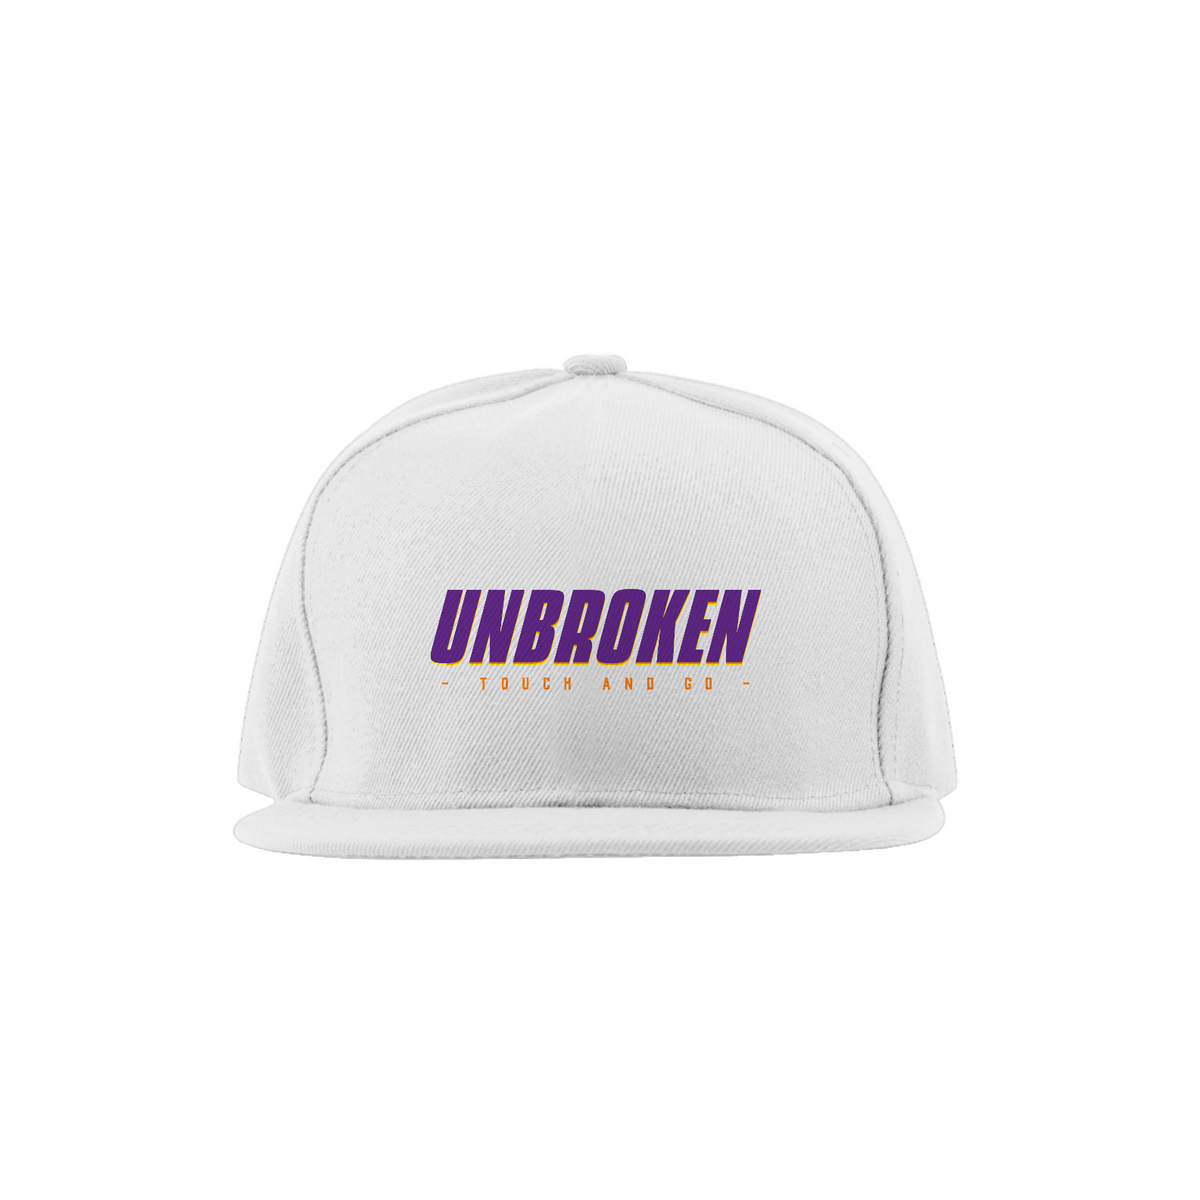 Nome do produto: Unbroken